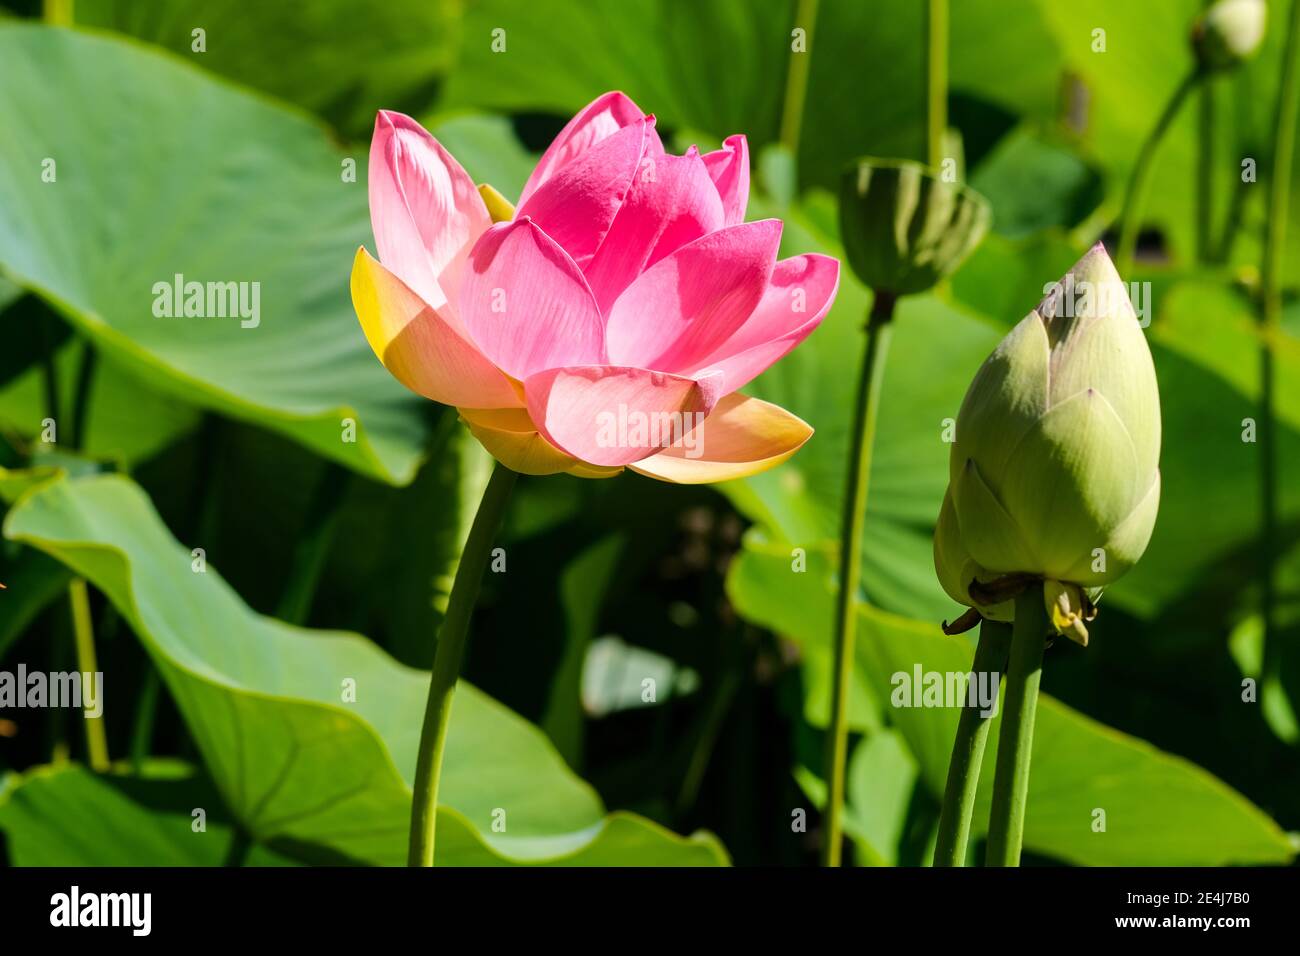 Heilige Lotusblume in den Botanischen Gärten in Adelaide Australien Stockfoto